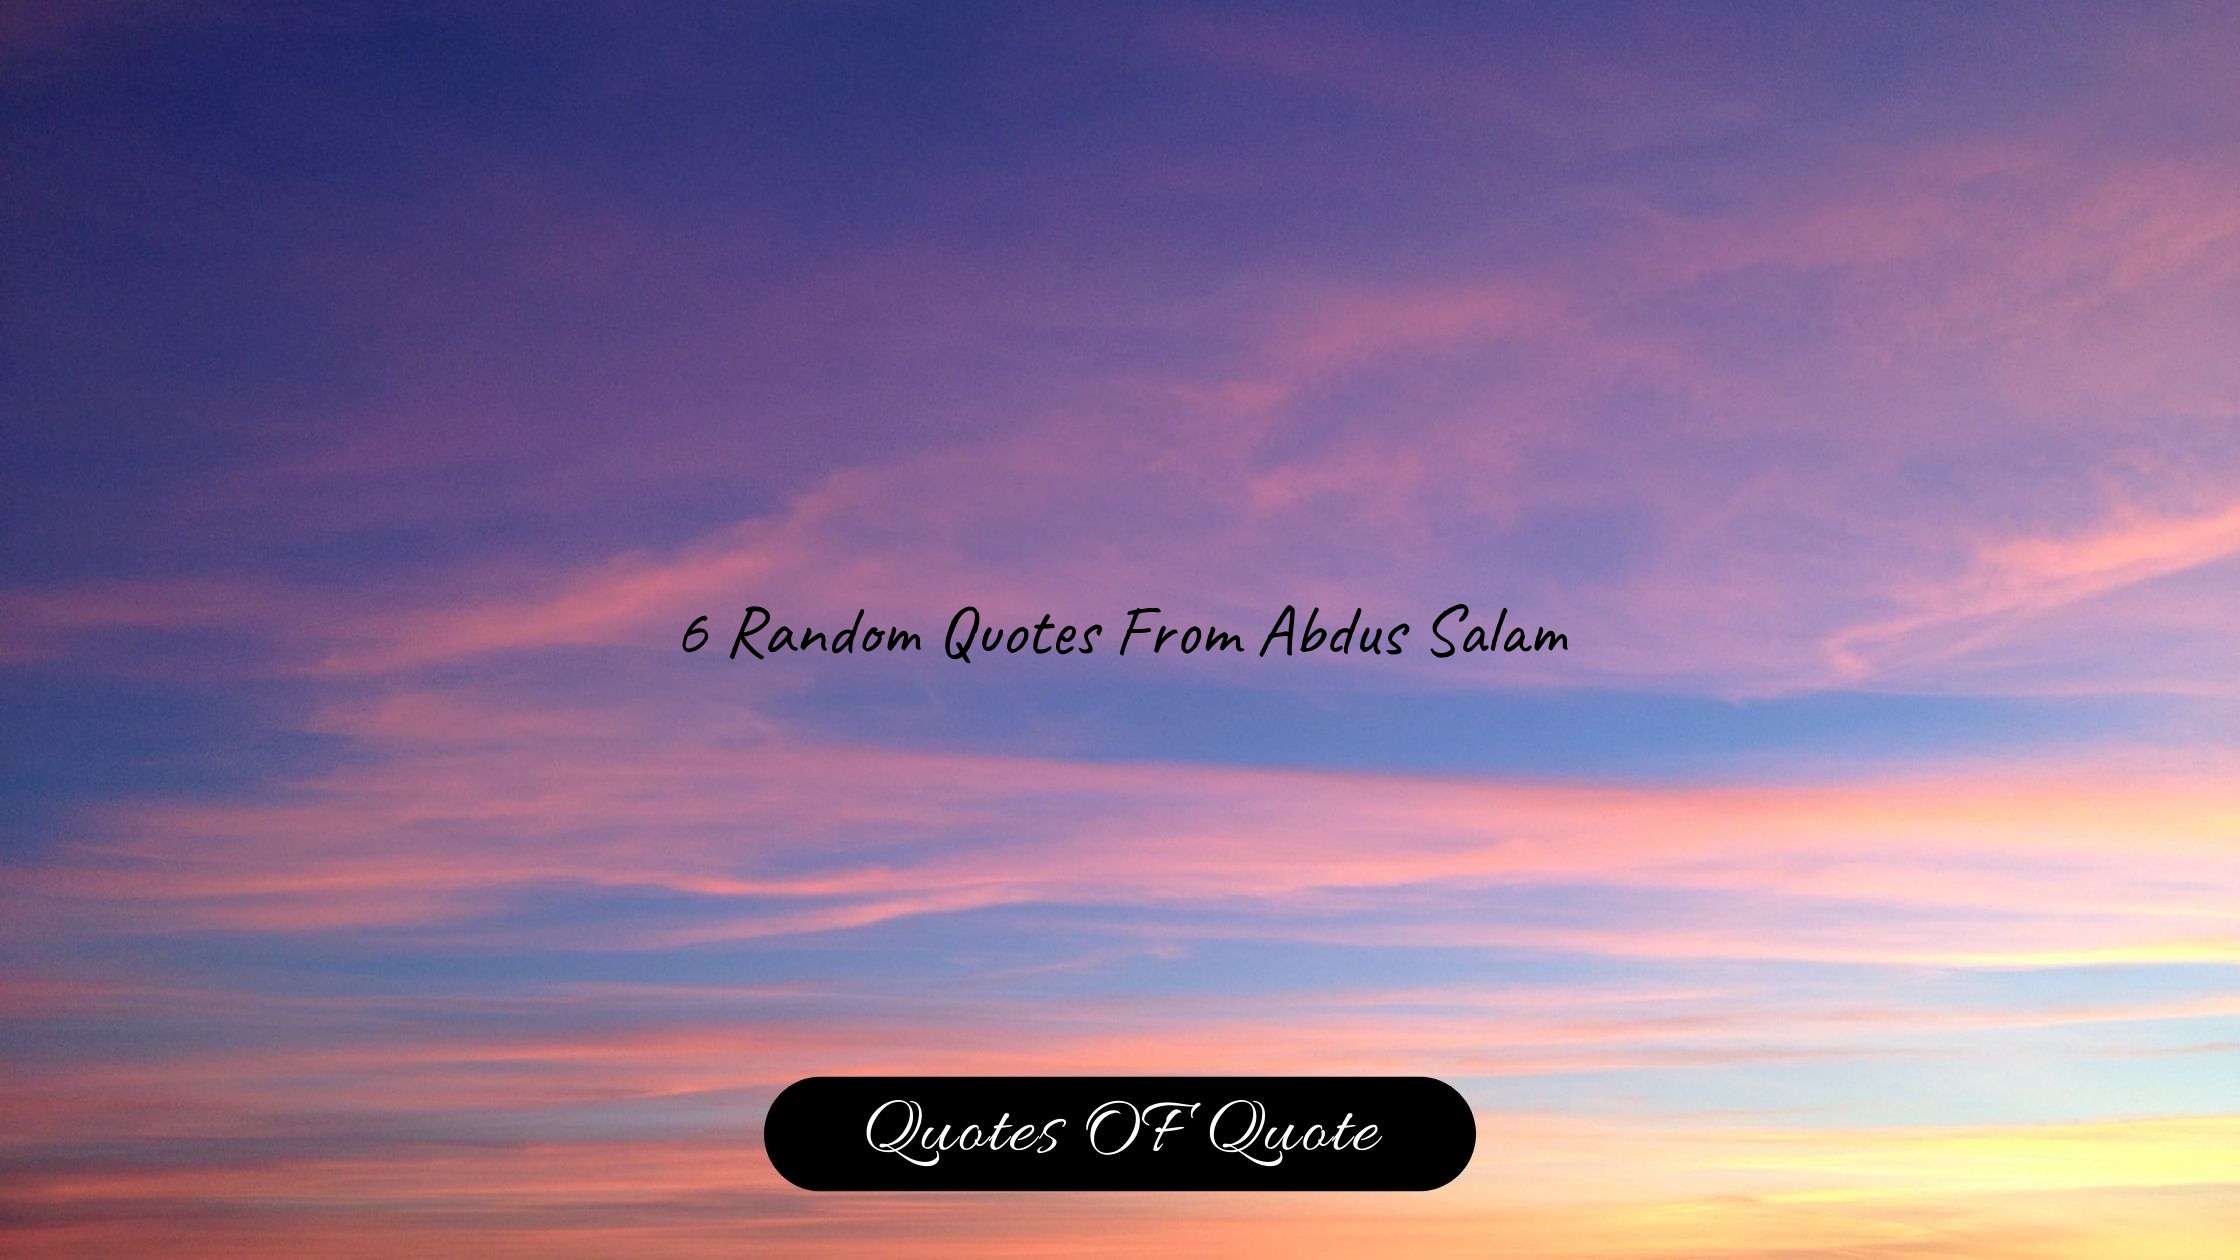 6 Random Quotes From Abdus Salam